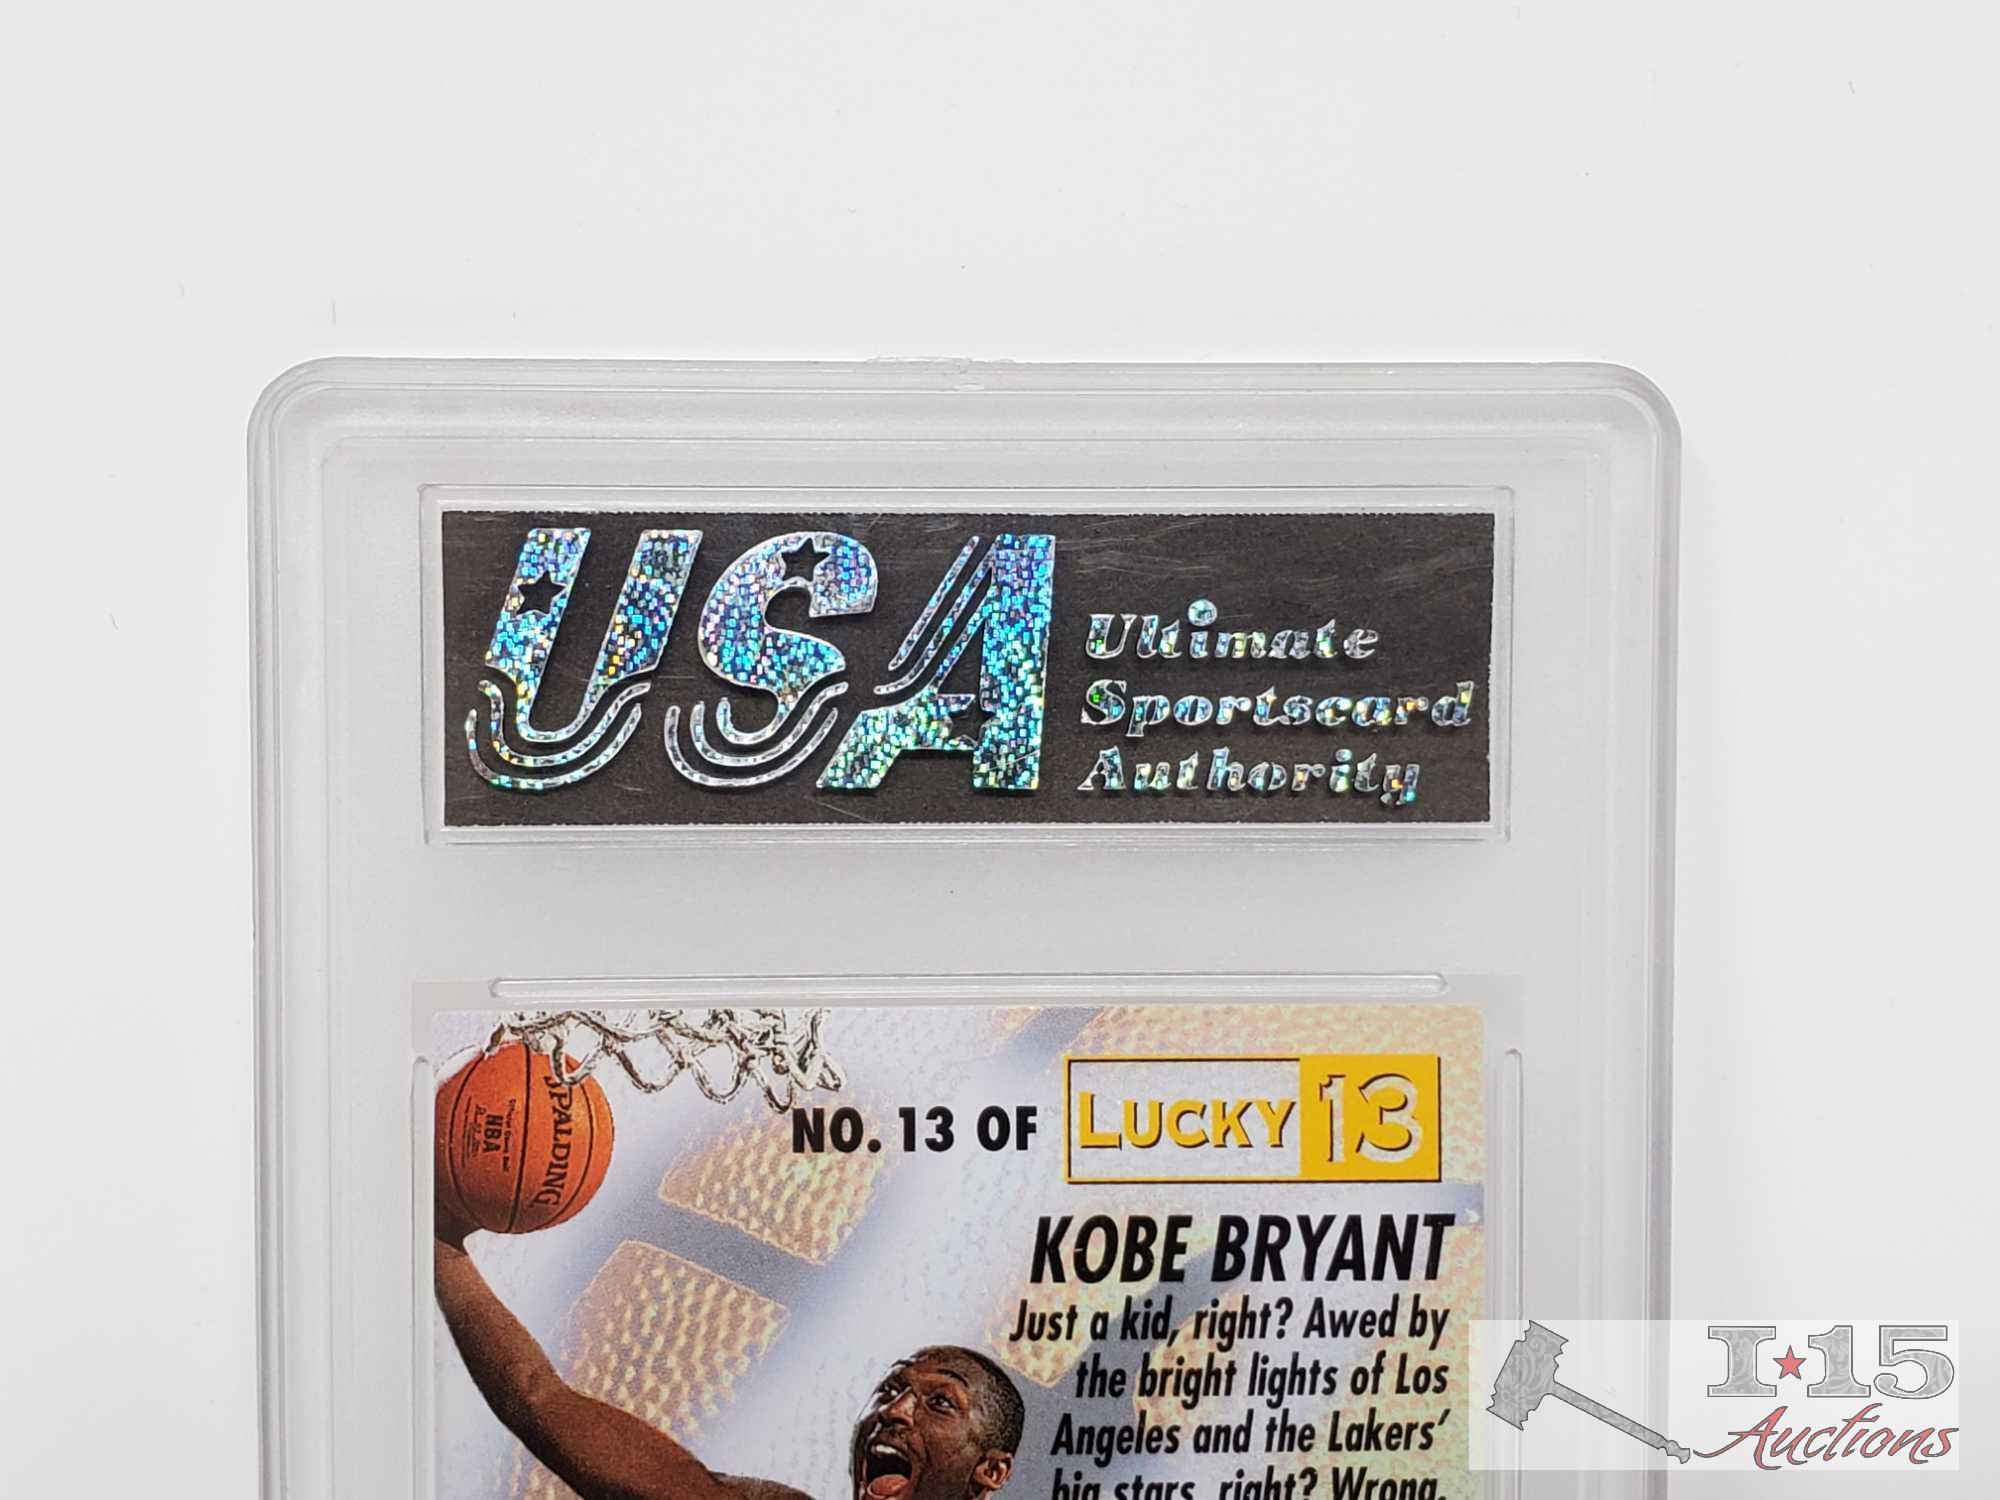 1996-97 Fleer Kobe Bryant Lucky 13 Card, 97 SPx Kobe Bryant Card